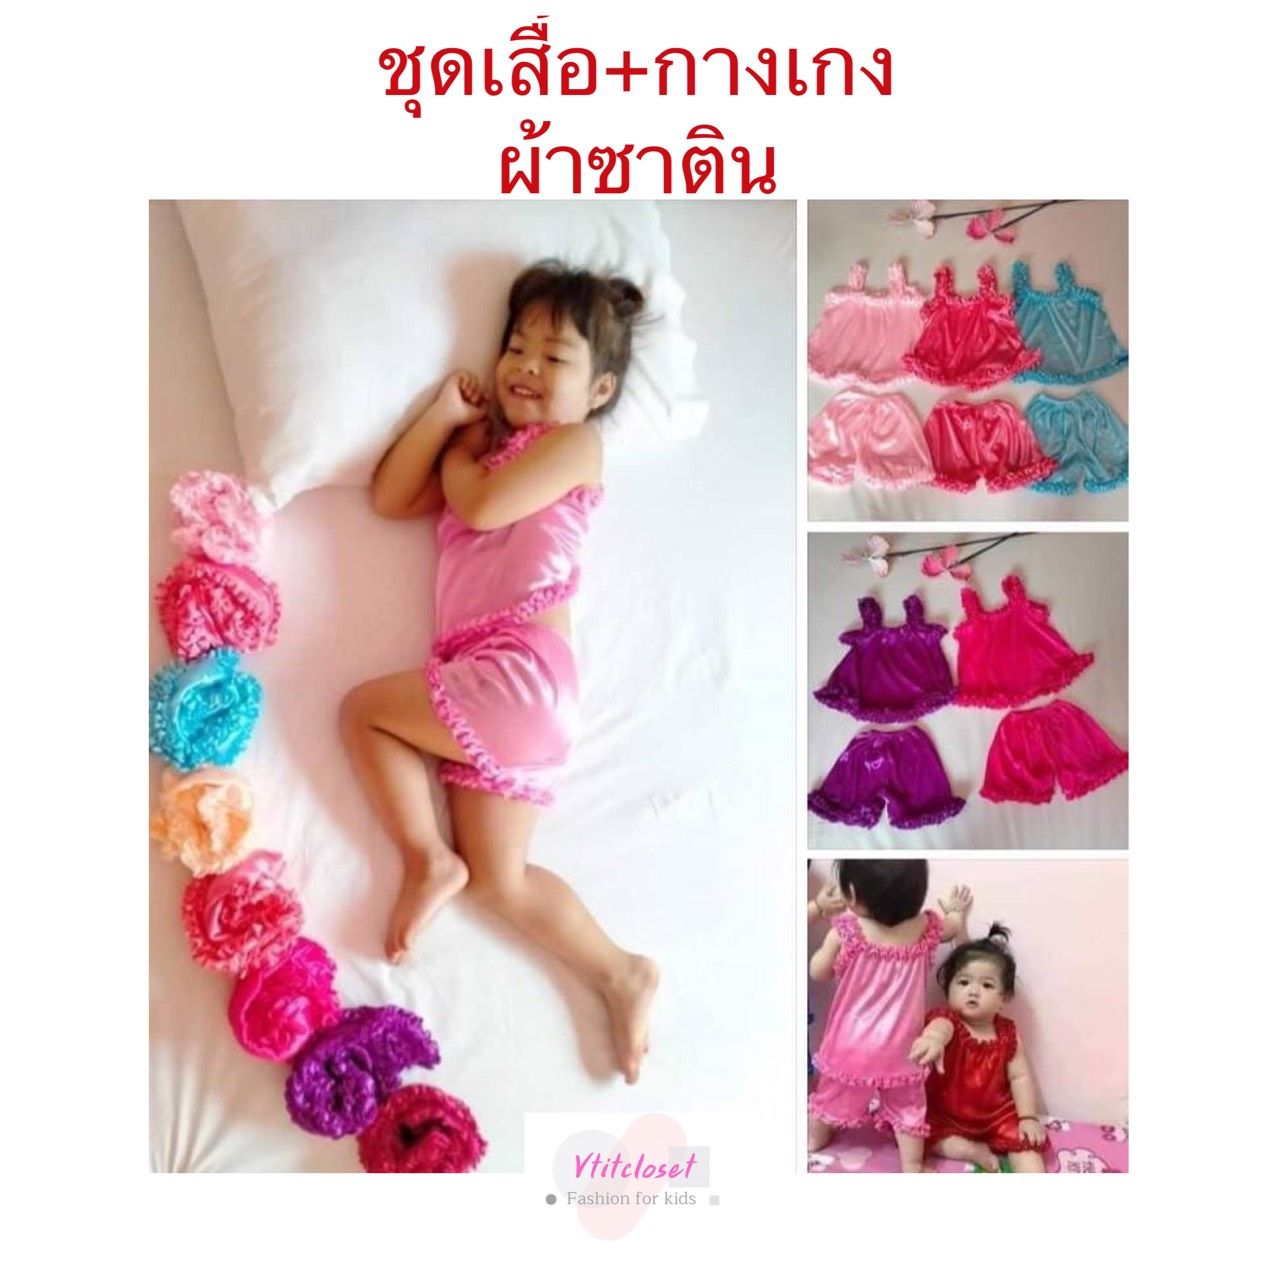 Vtitcloset ชุดเด็กผู้หญิง ชุดกล้ามเด็กสีสันสดใส ผ้าซาติน ใส่สบาย สำหรับเด็ก 3 เดือน-2 ขวบ (เลือกสีได้) (ควรดูรอบ อก เสื้อ เป็นเกณฑ์)